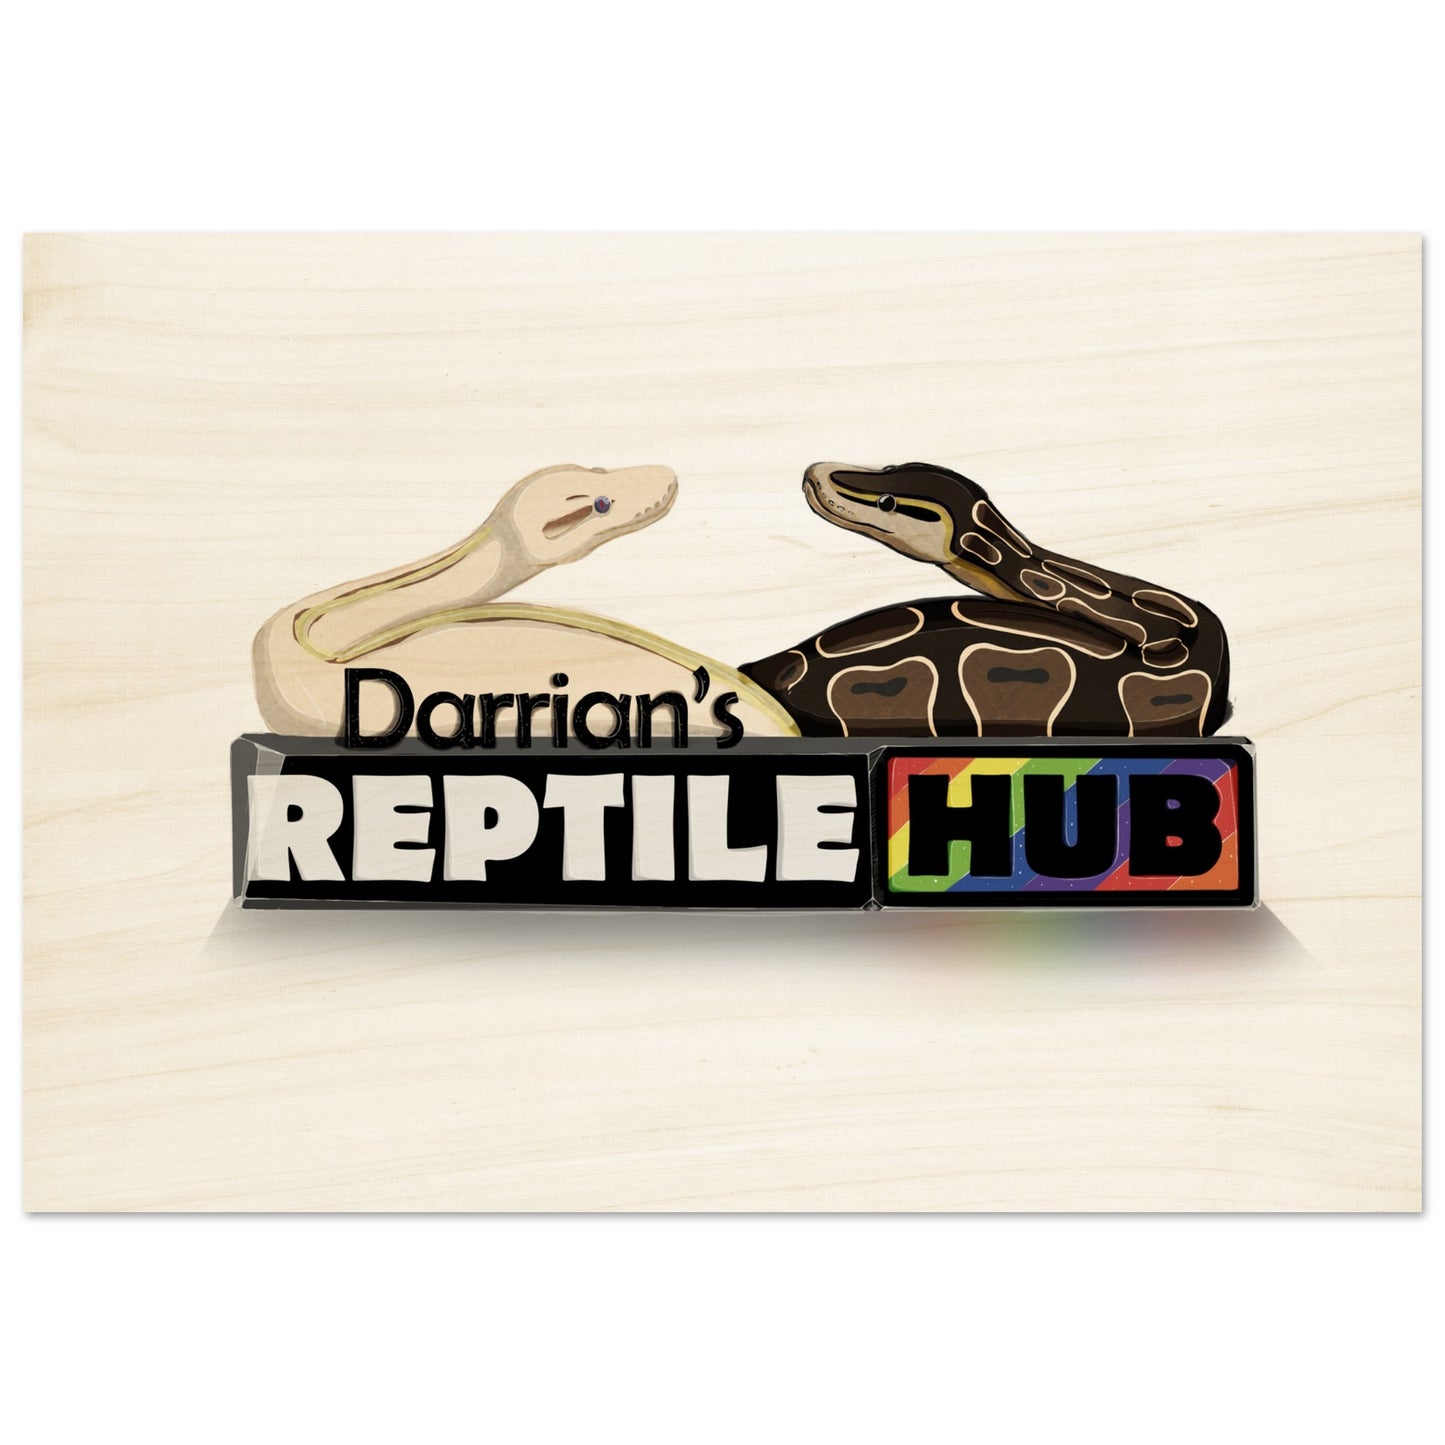 Darrian's Reptile Hub - Wood Prints